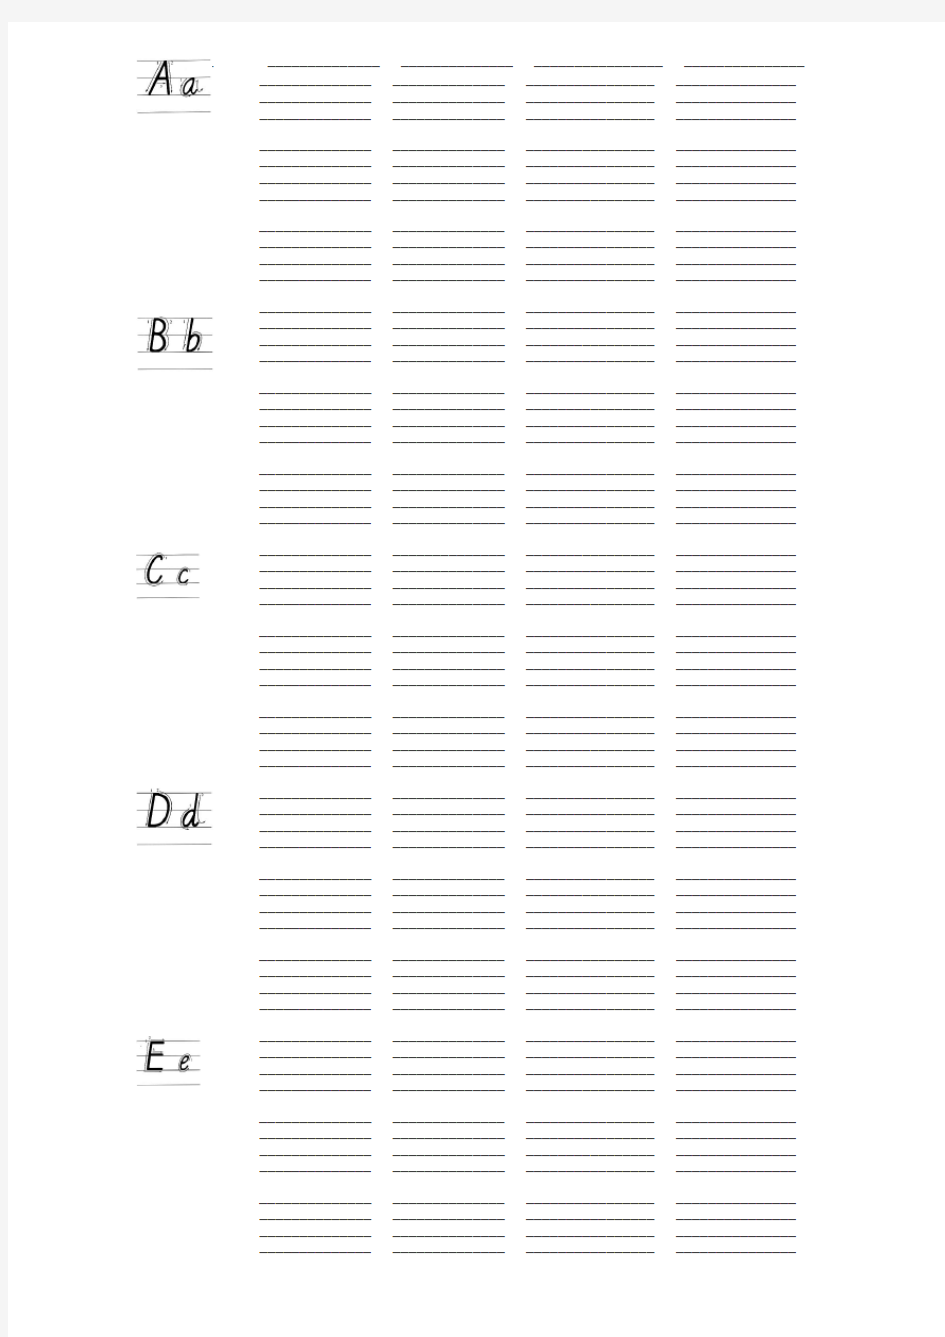 26个英文字母书写标准及练习本-A4打印